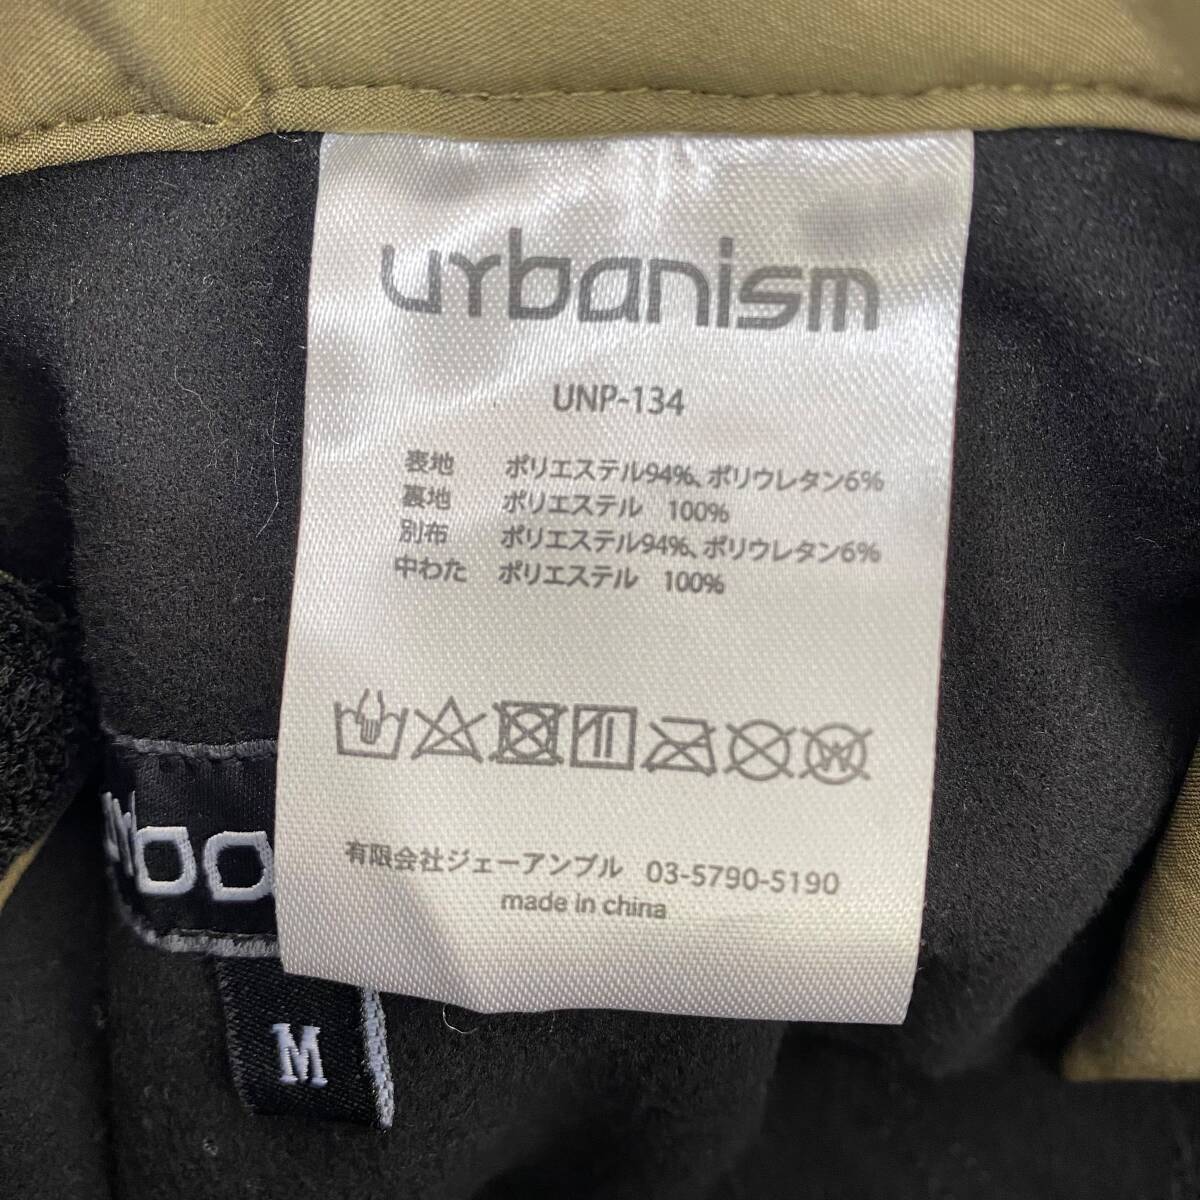 【美品】 Urbanism アーバニズム ストレッチキルティングパンツ UNP-134 カーキ系 Mサイズ 7217-80の画像3